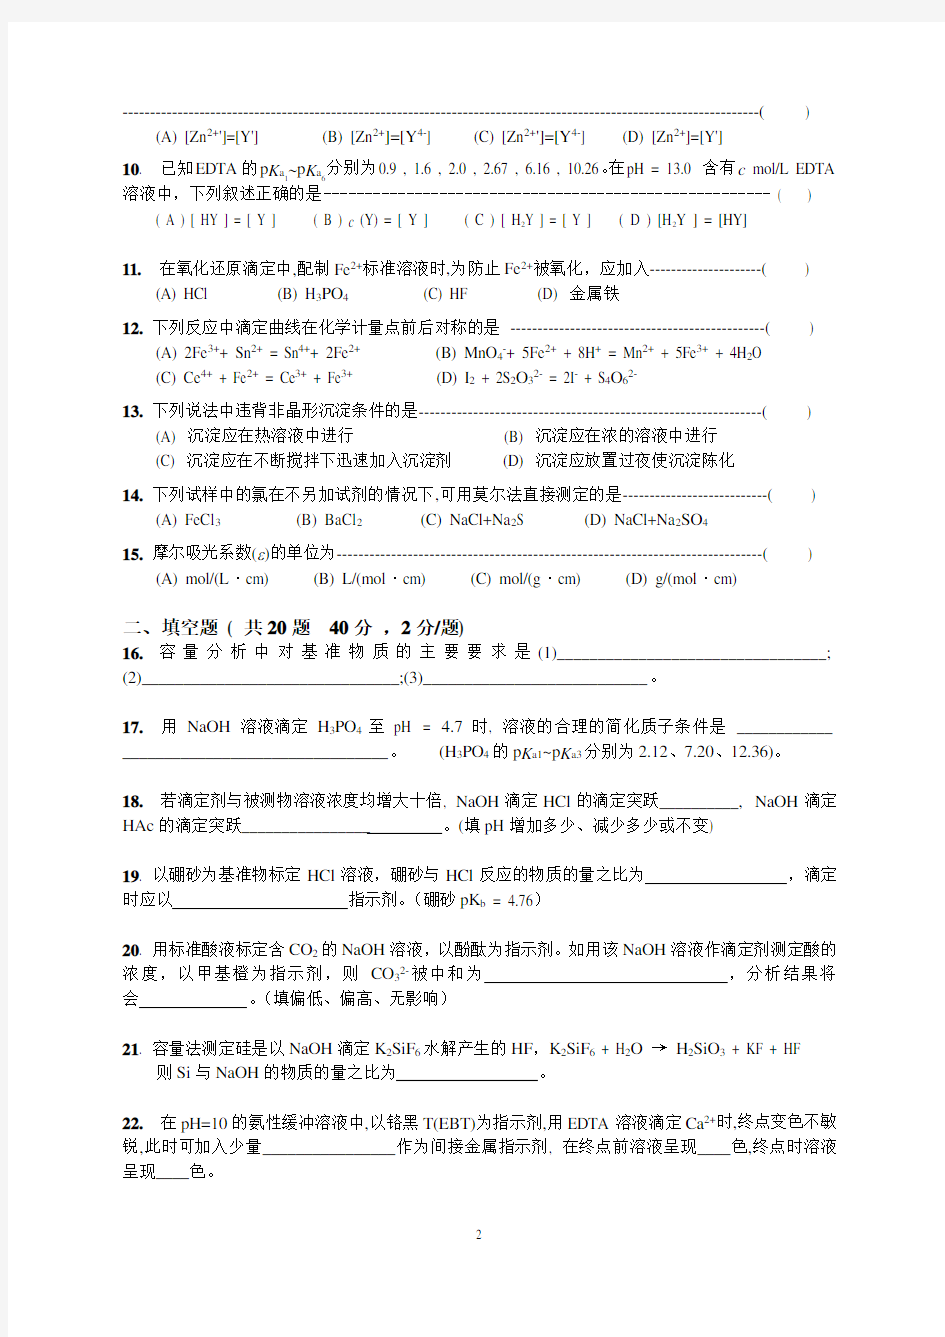 (完整版)北京科技大学2011年研究生考试真题-629分析化学